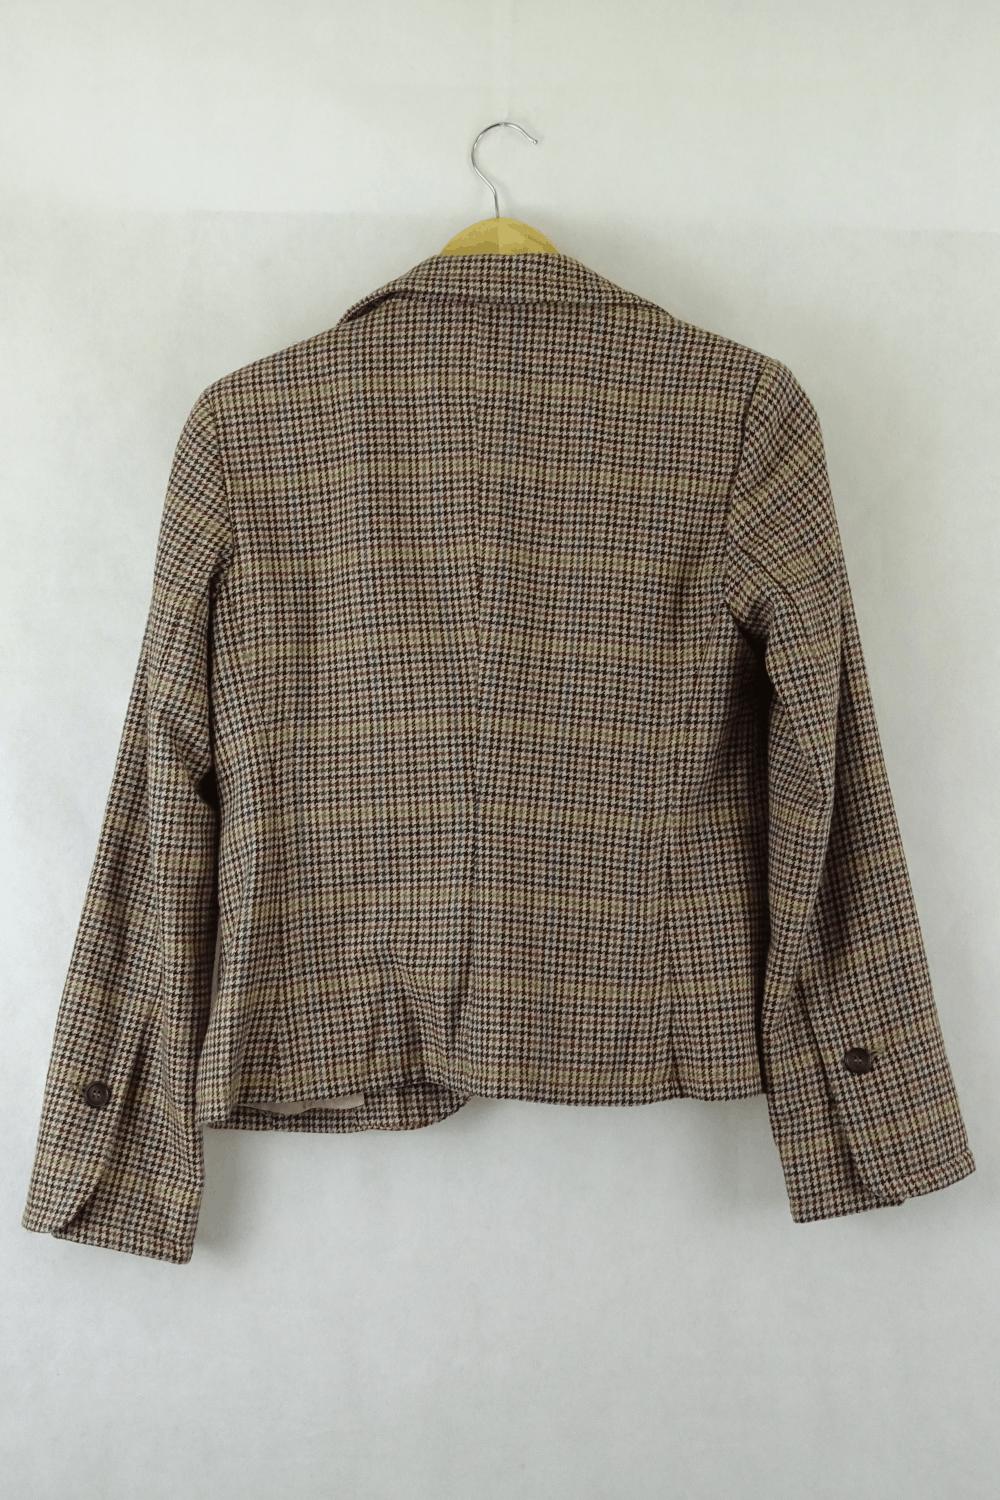 Woven Jacket Brown Multi Pattern 8